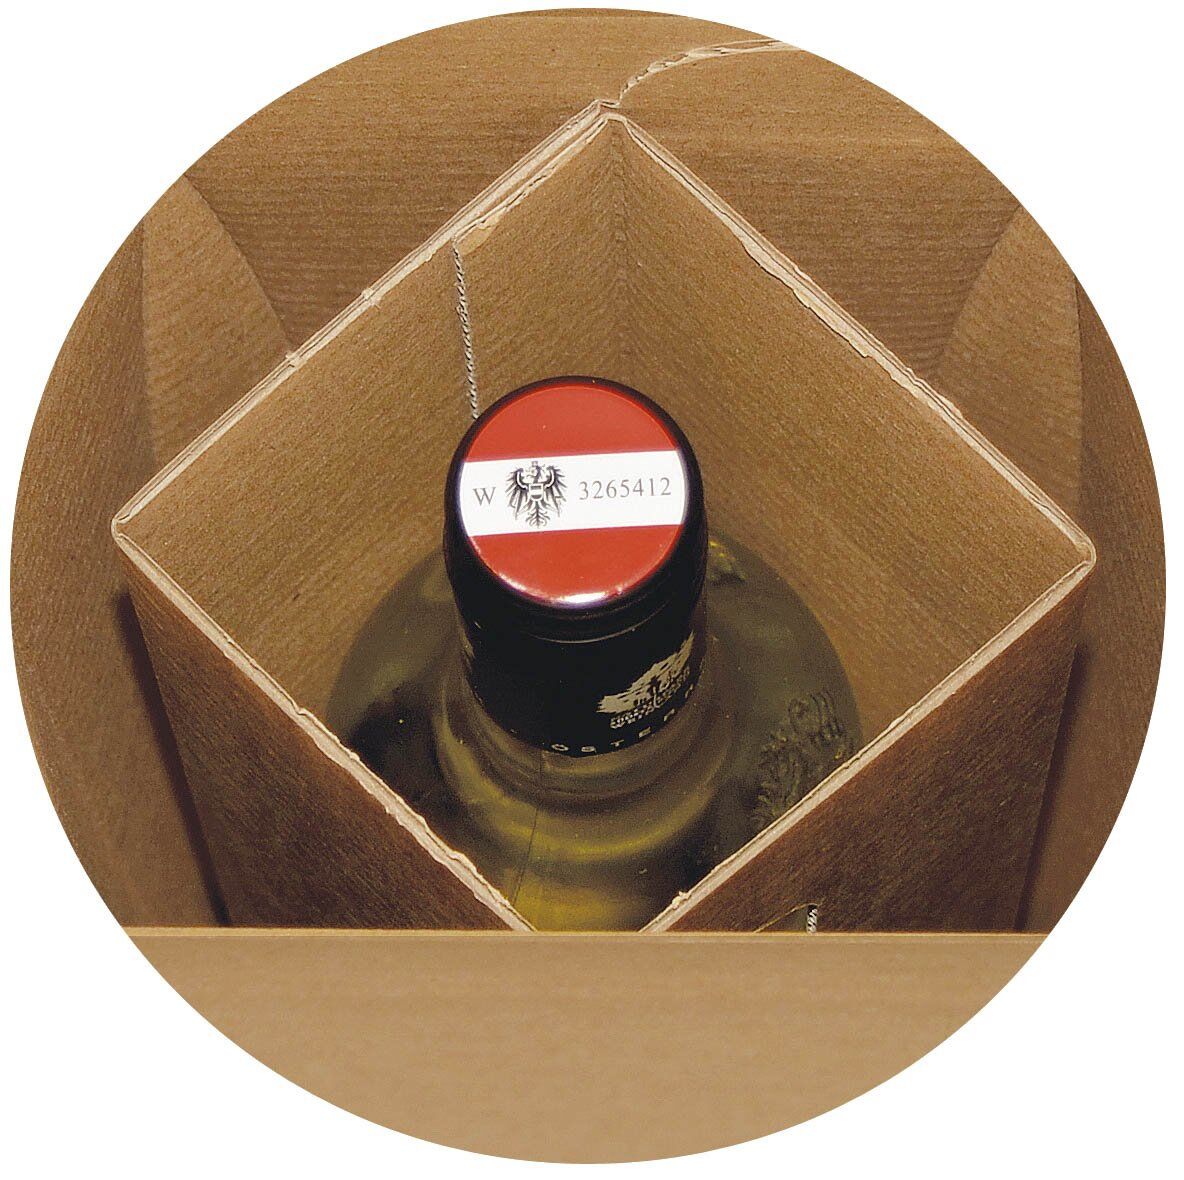 Flaschenkarton mit Selbstklebeverschluss - für 1 Flaschen